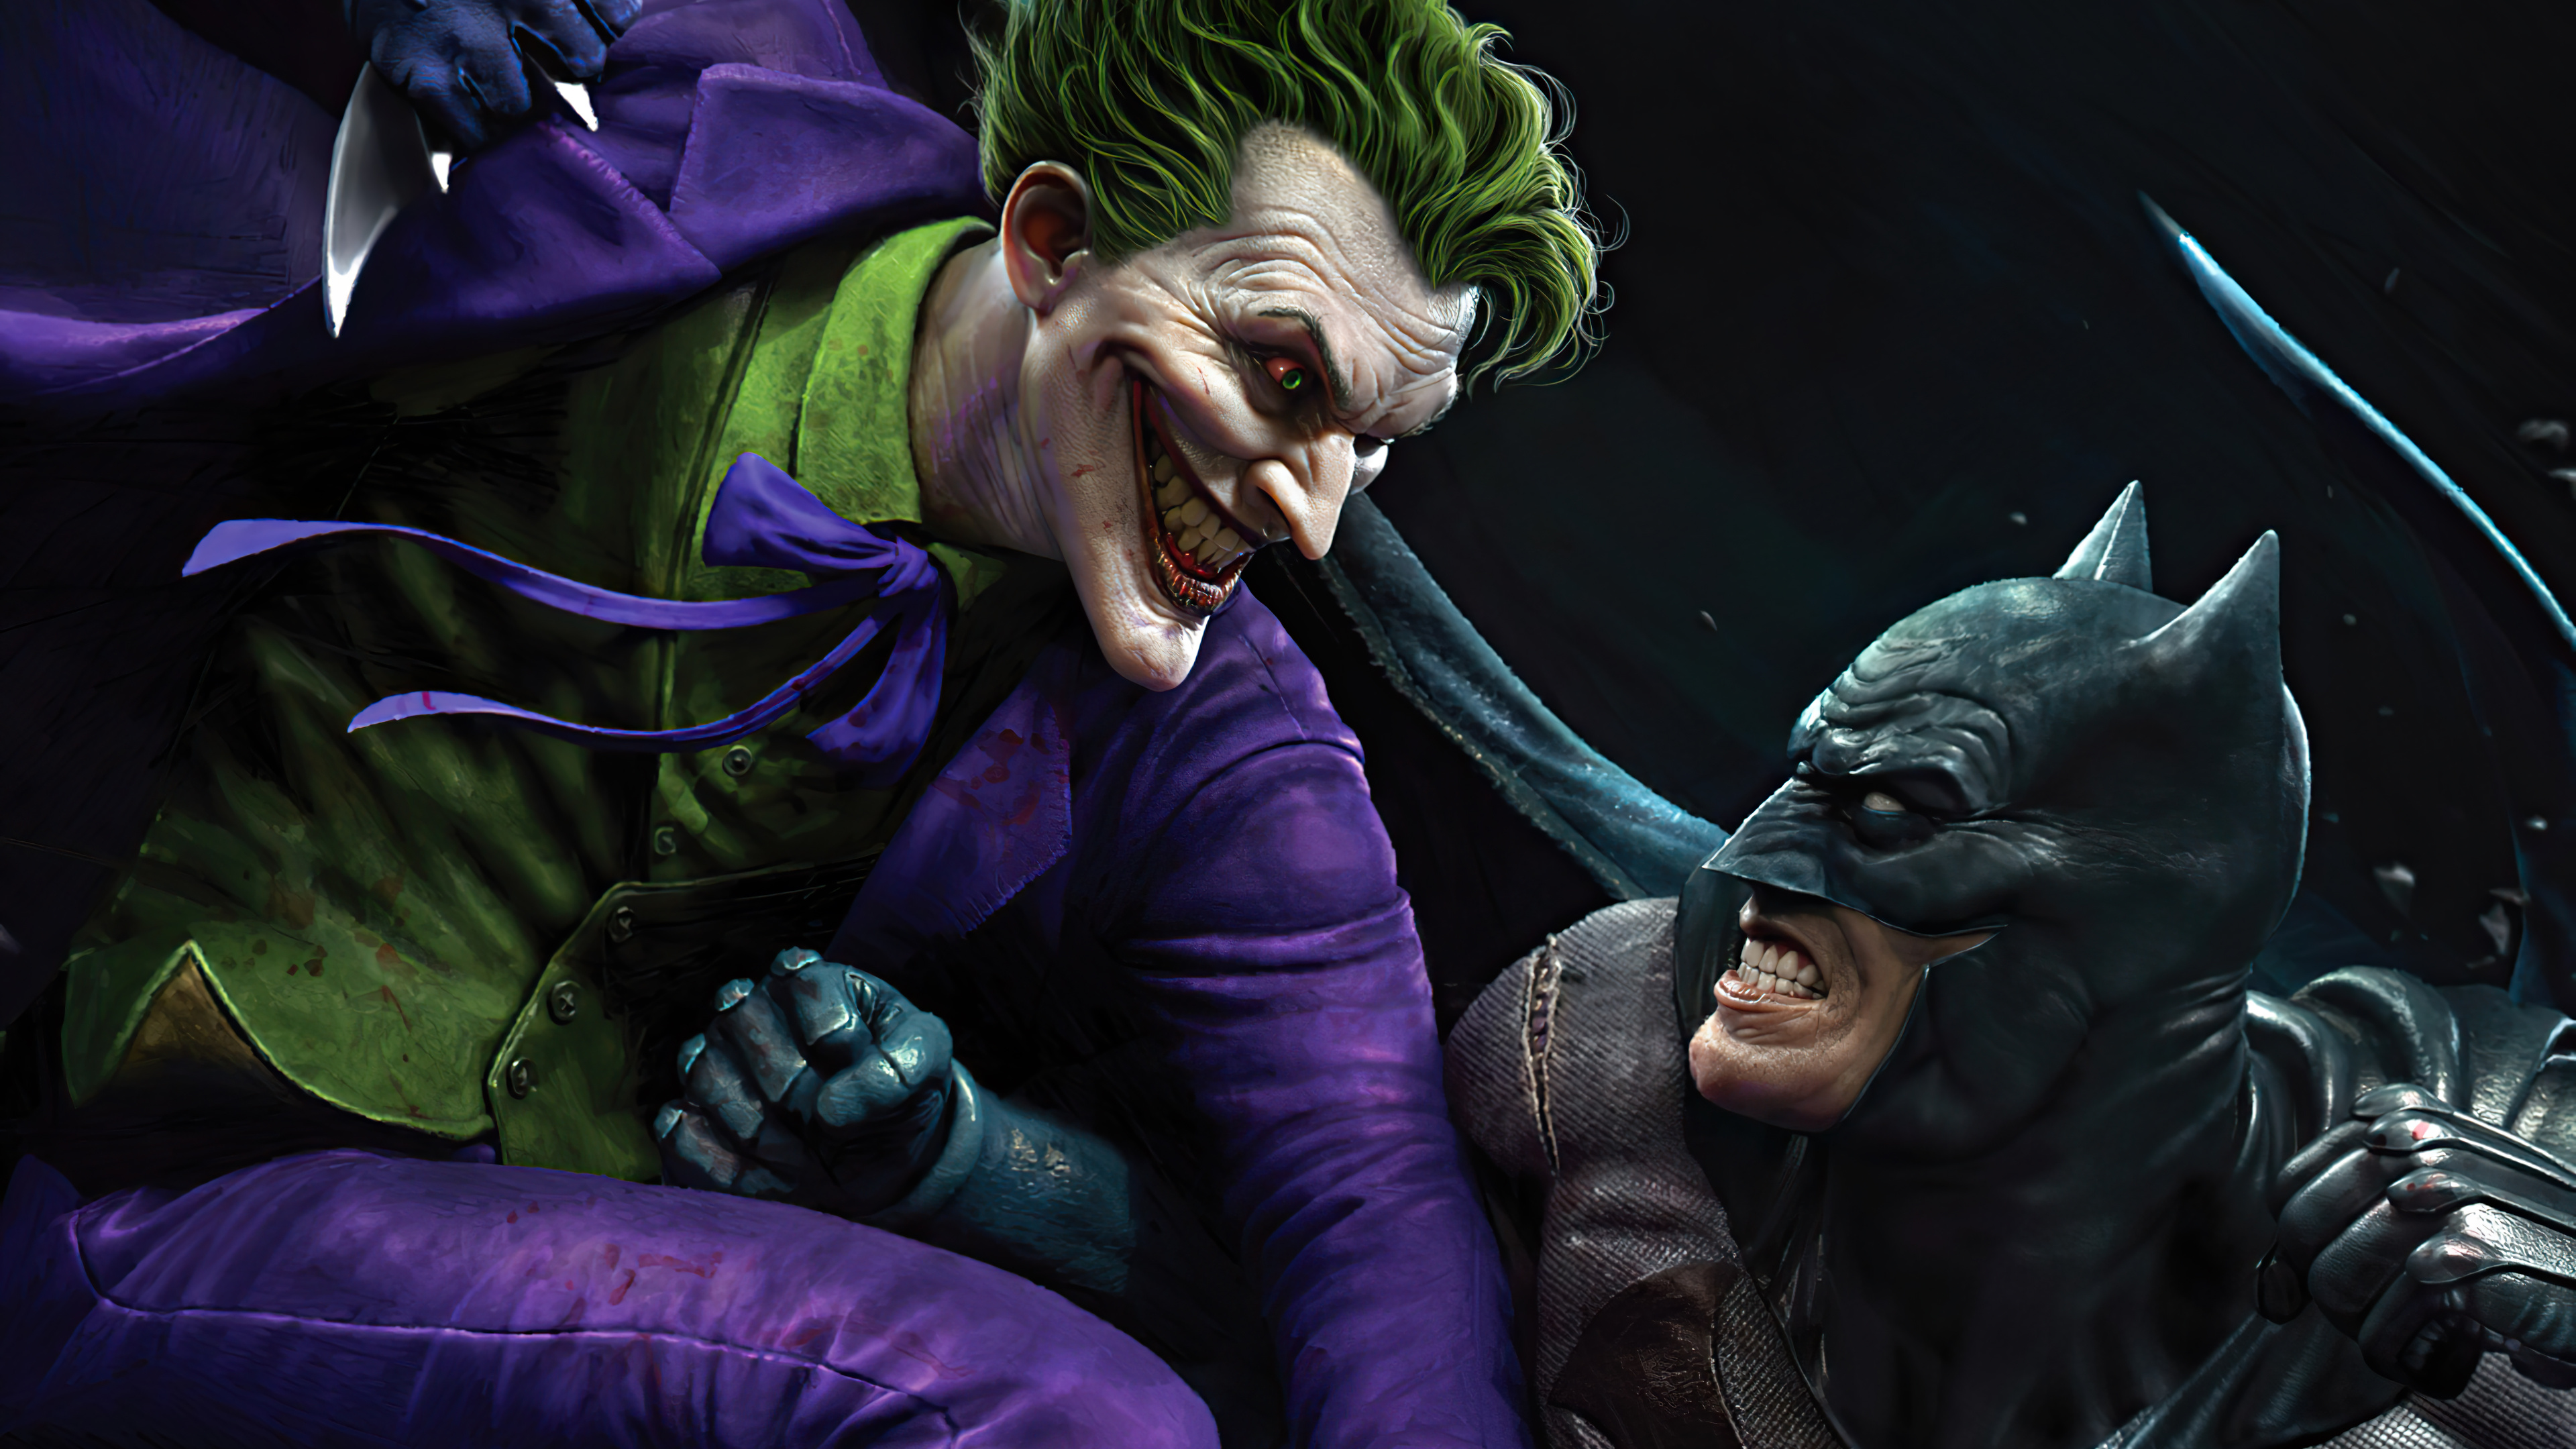 Joker vs Batman HD 4K Wallpaper 873 3840x2160